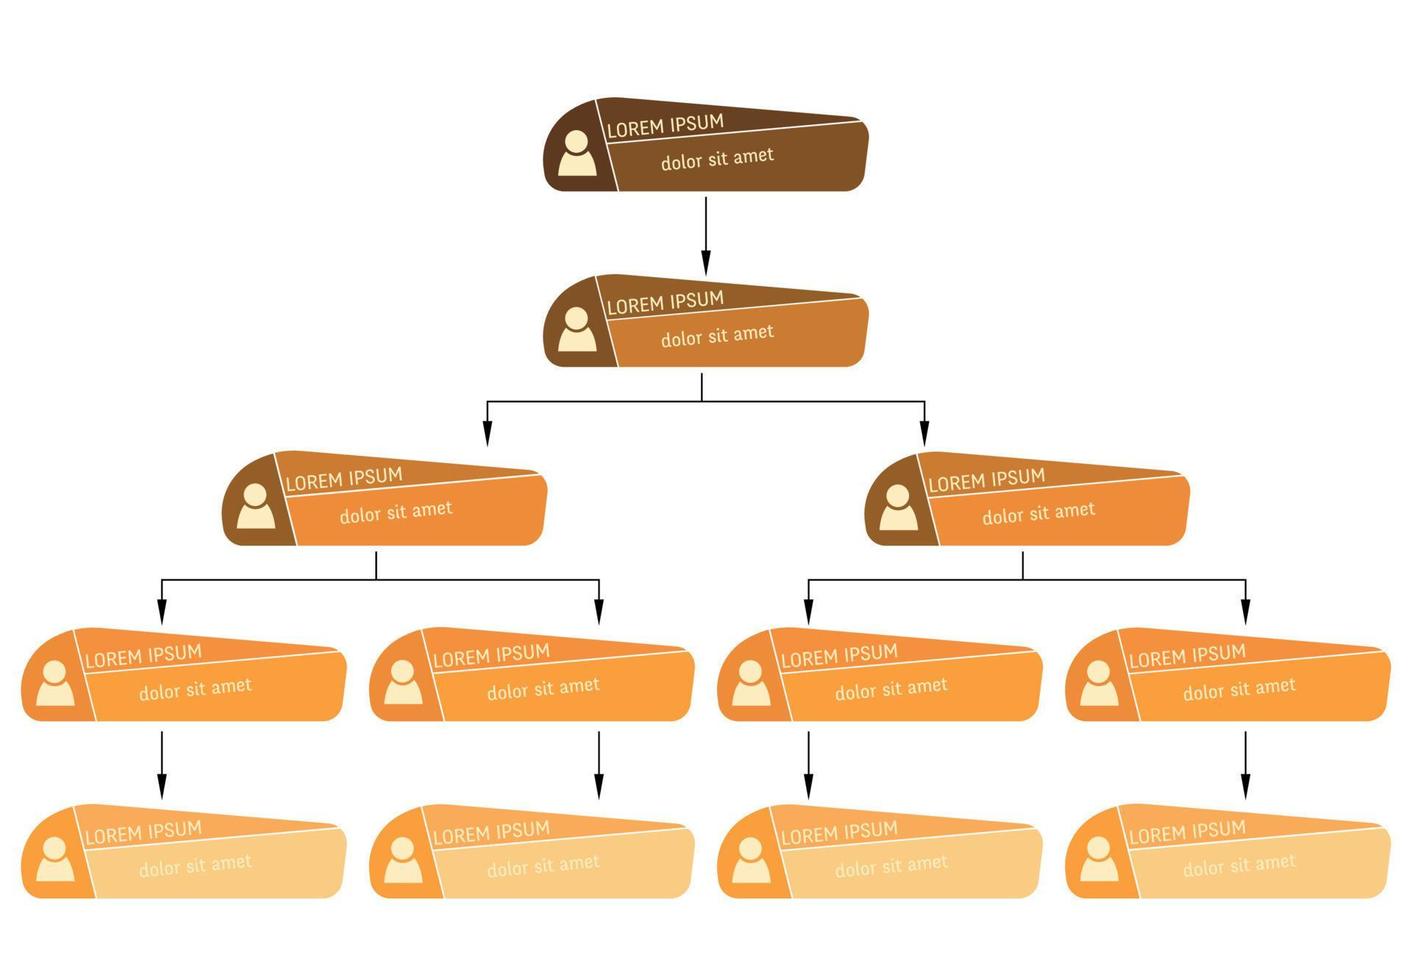 conceito de estrutura de negócios laranja, esquema de organograma corporativo com ícones de pessoas. ilustração vetorial. vetor